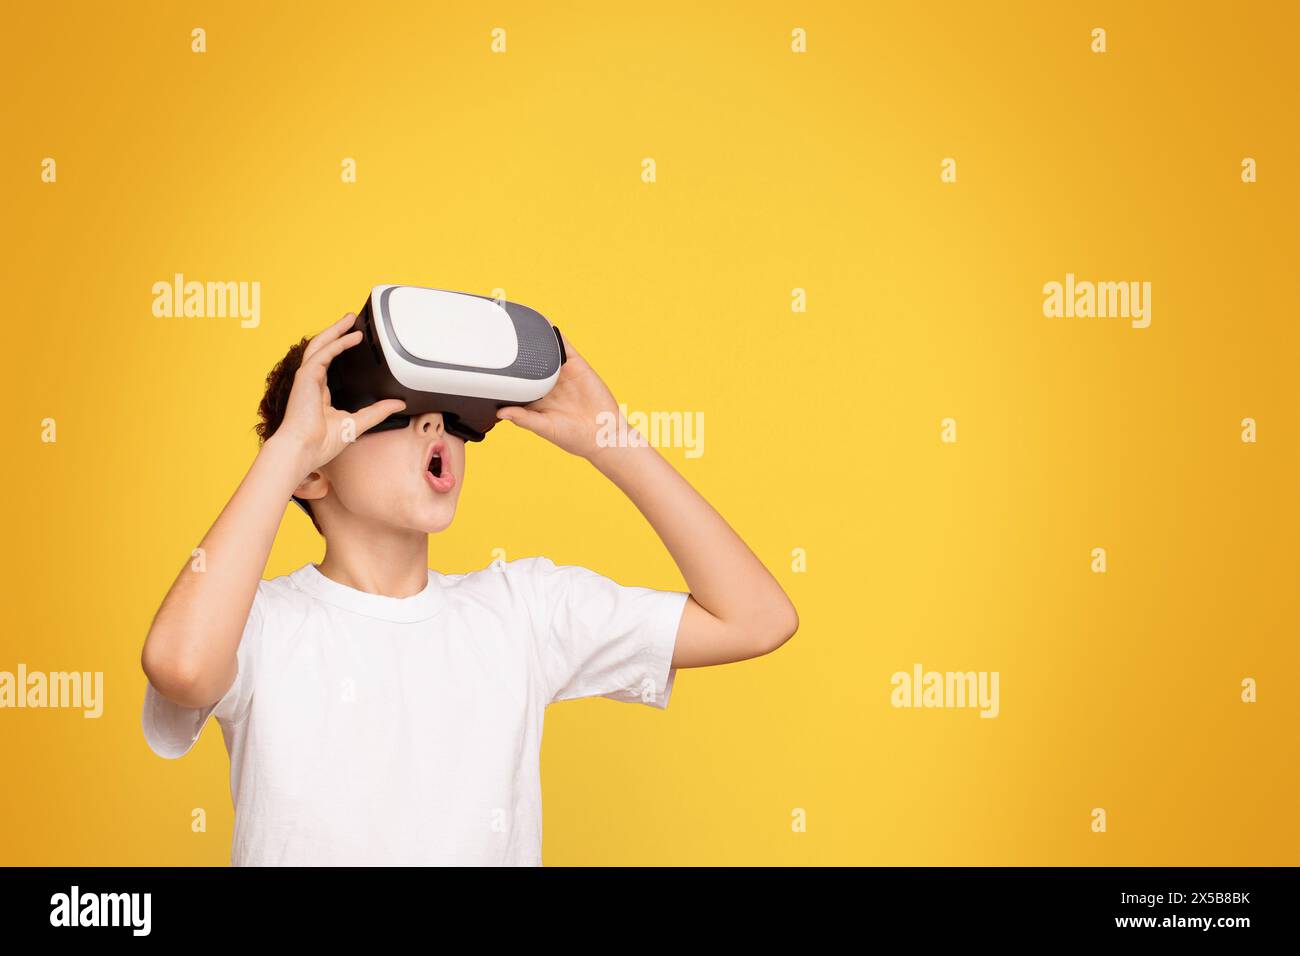 Junge in weißem T-Shirt mit schwarzem und weißem virtuellen Globus Stockfoto